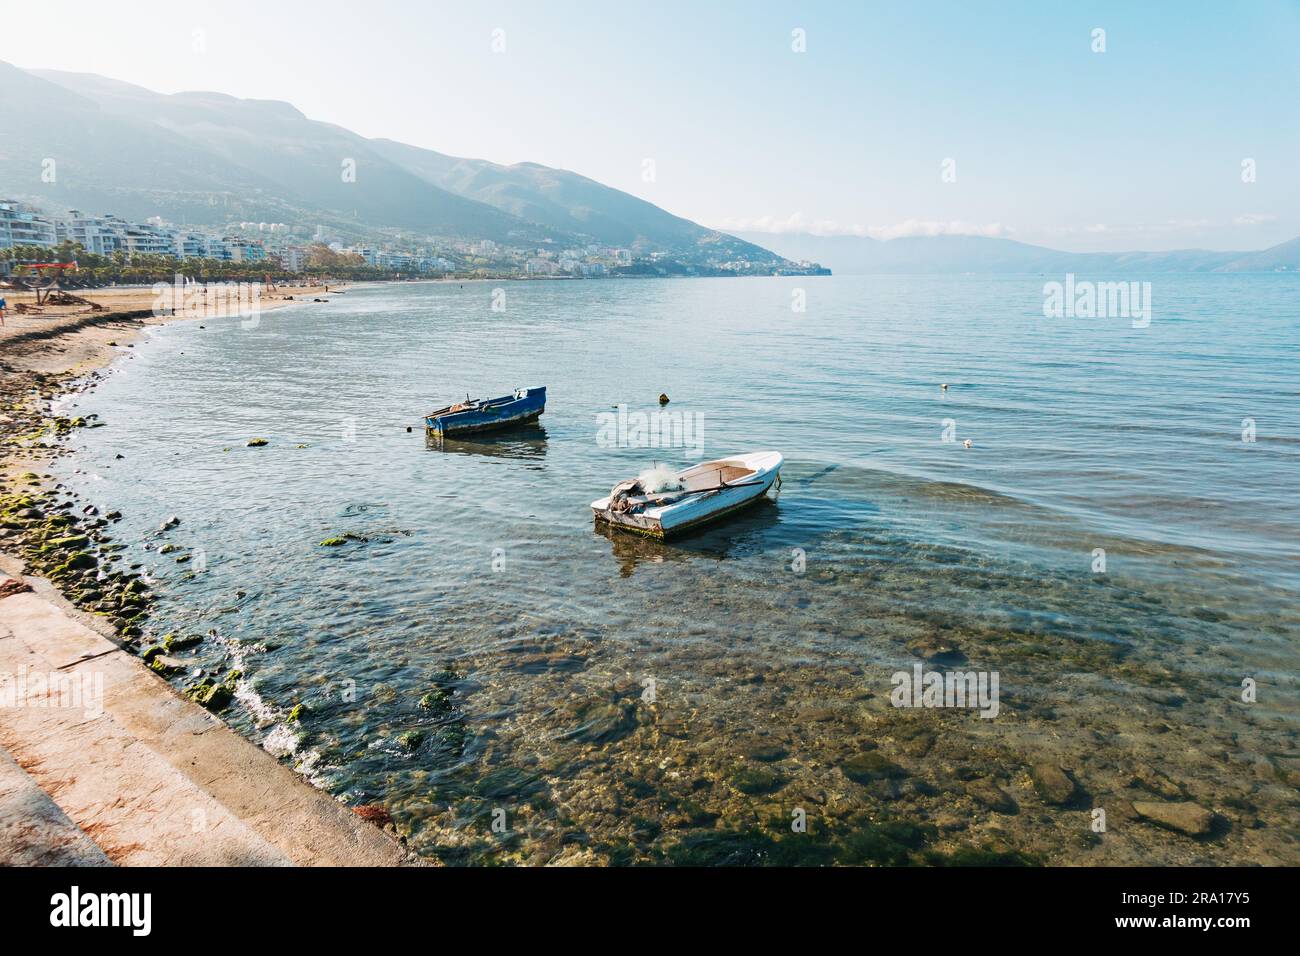 Una mattinata tranquilla sulla baia nella città costiera di Vlorë, nell'Albania meridionale Foto Stock